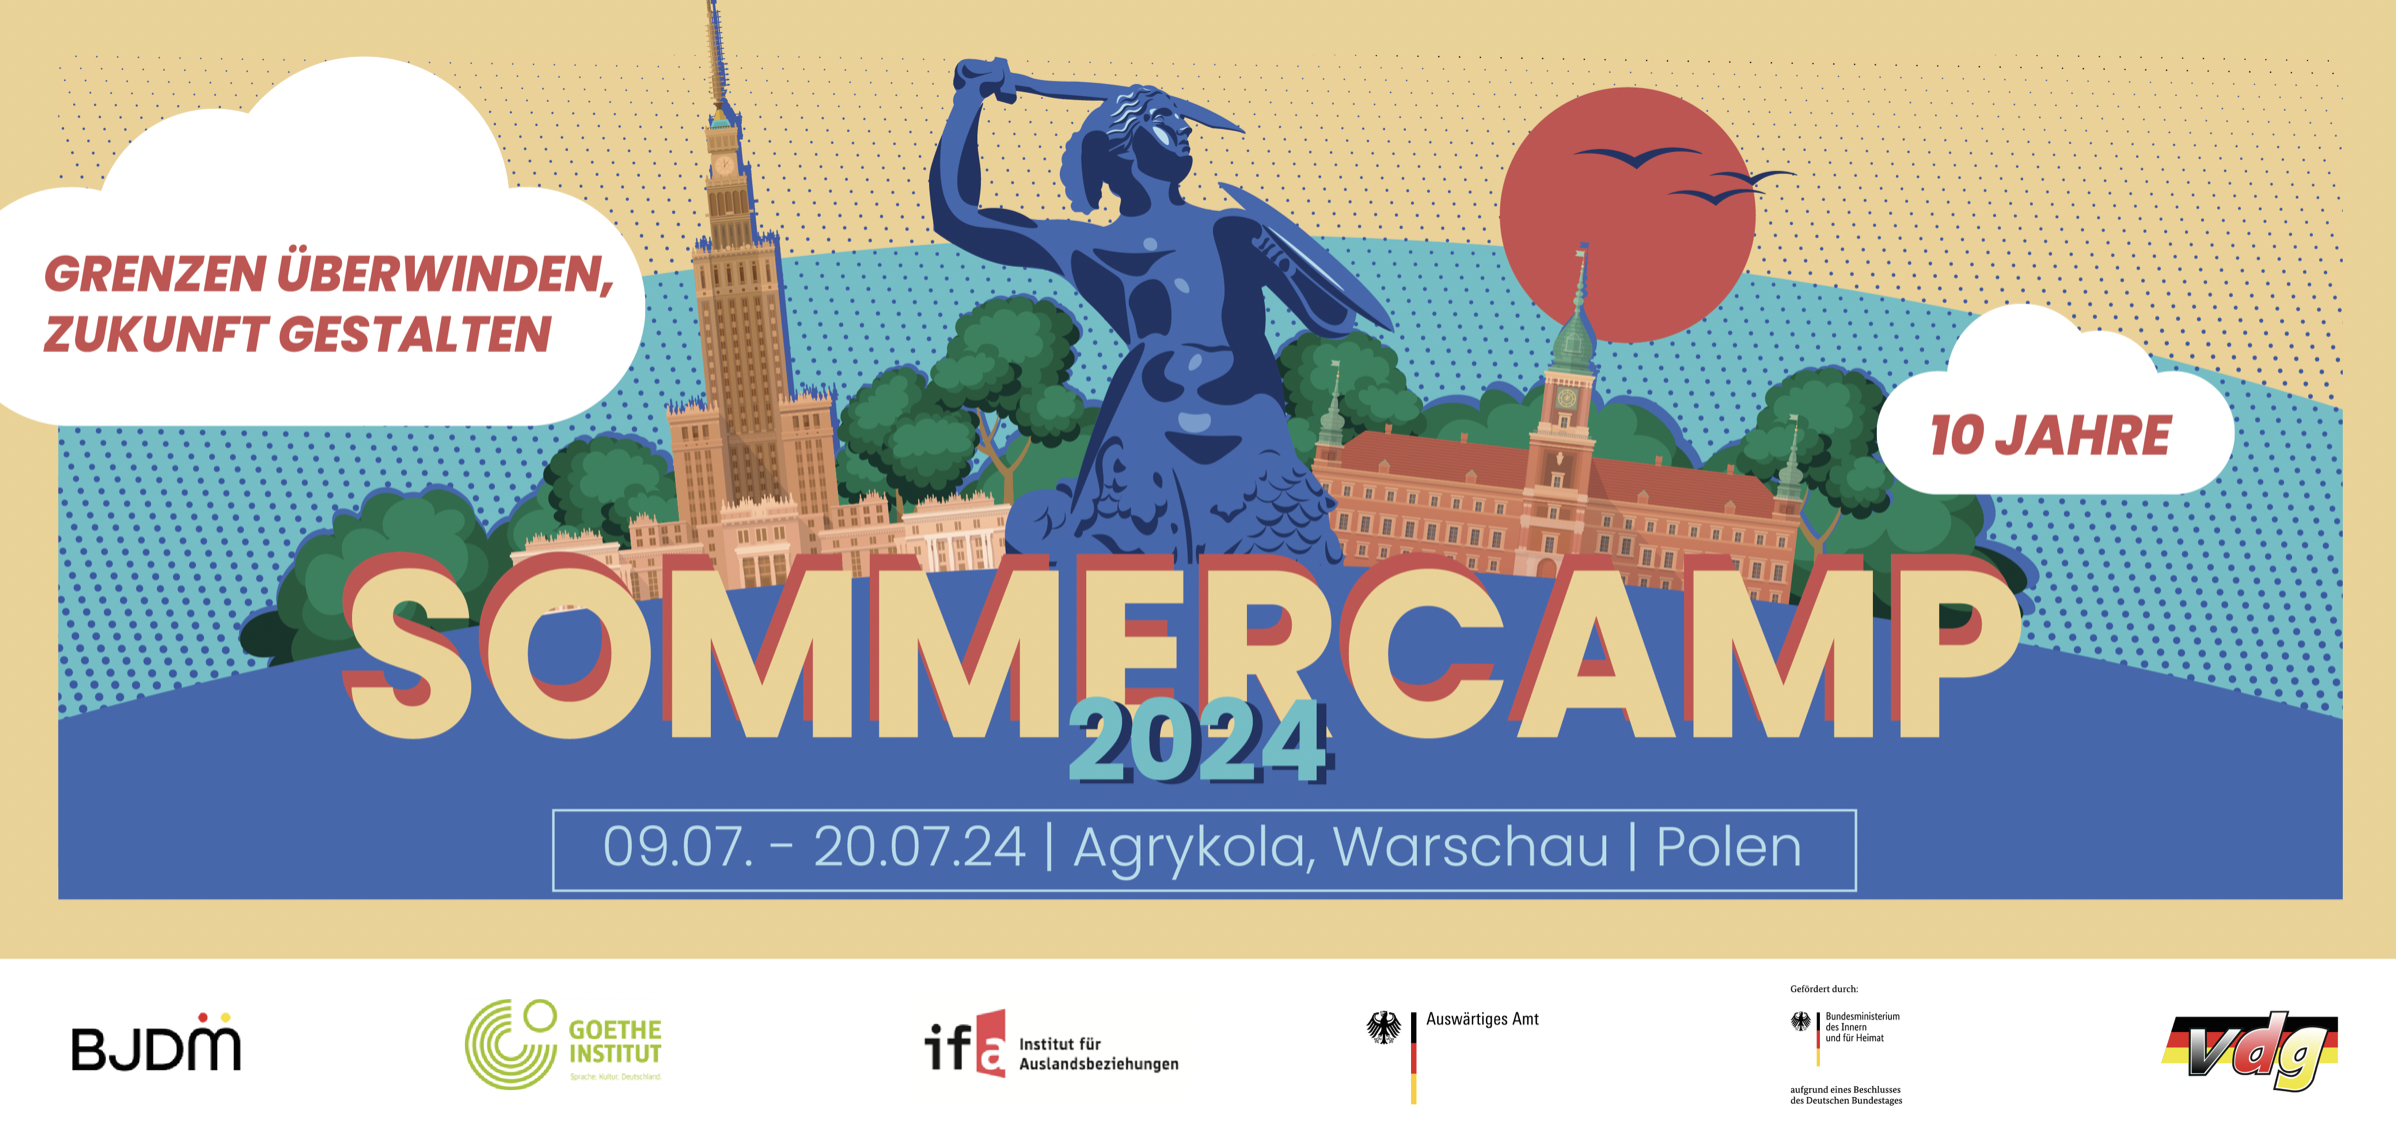 Sommercamp 2024: Gemeinsam Grenzen überwinden und Zukunft gestalten